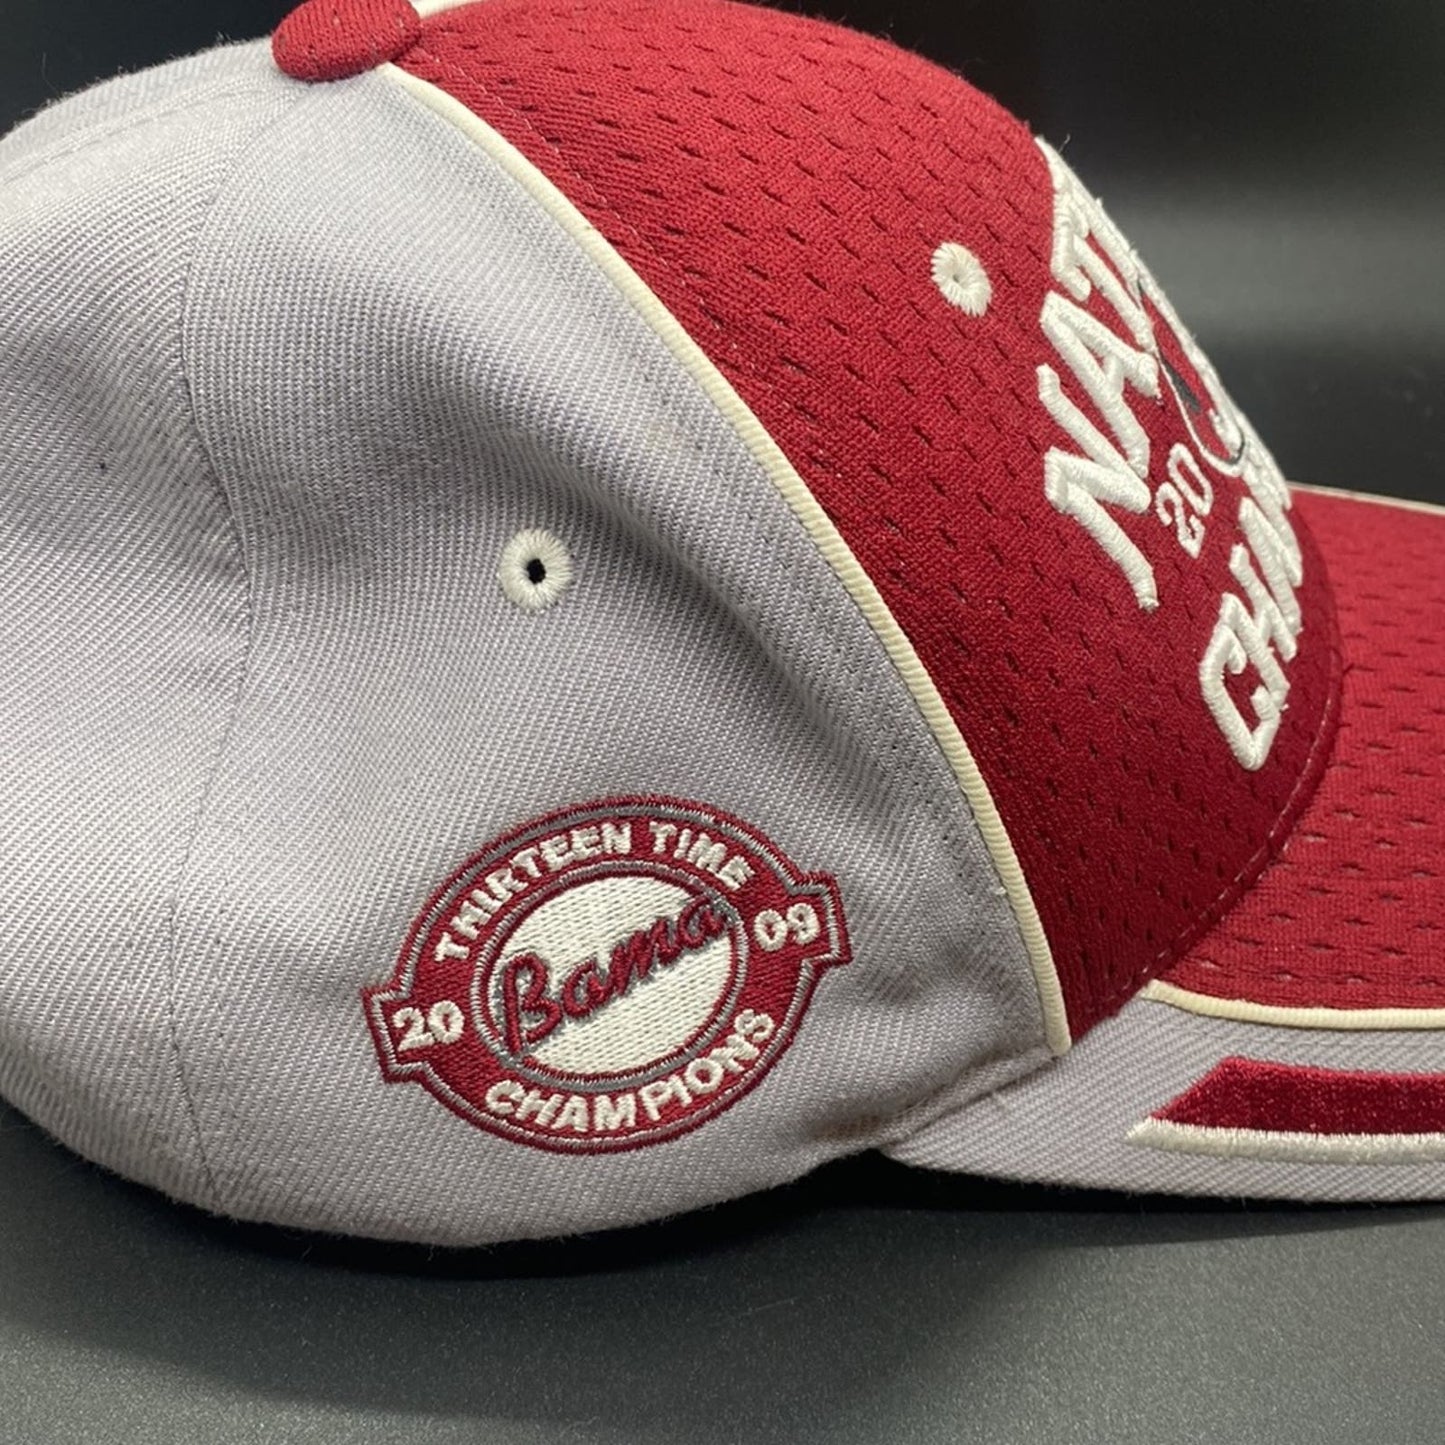 2009 Alabama Crimson Tide Strapback adjustable National Champs Hat #patch